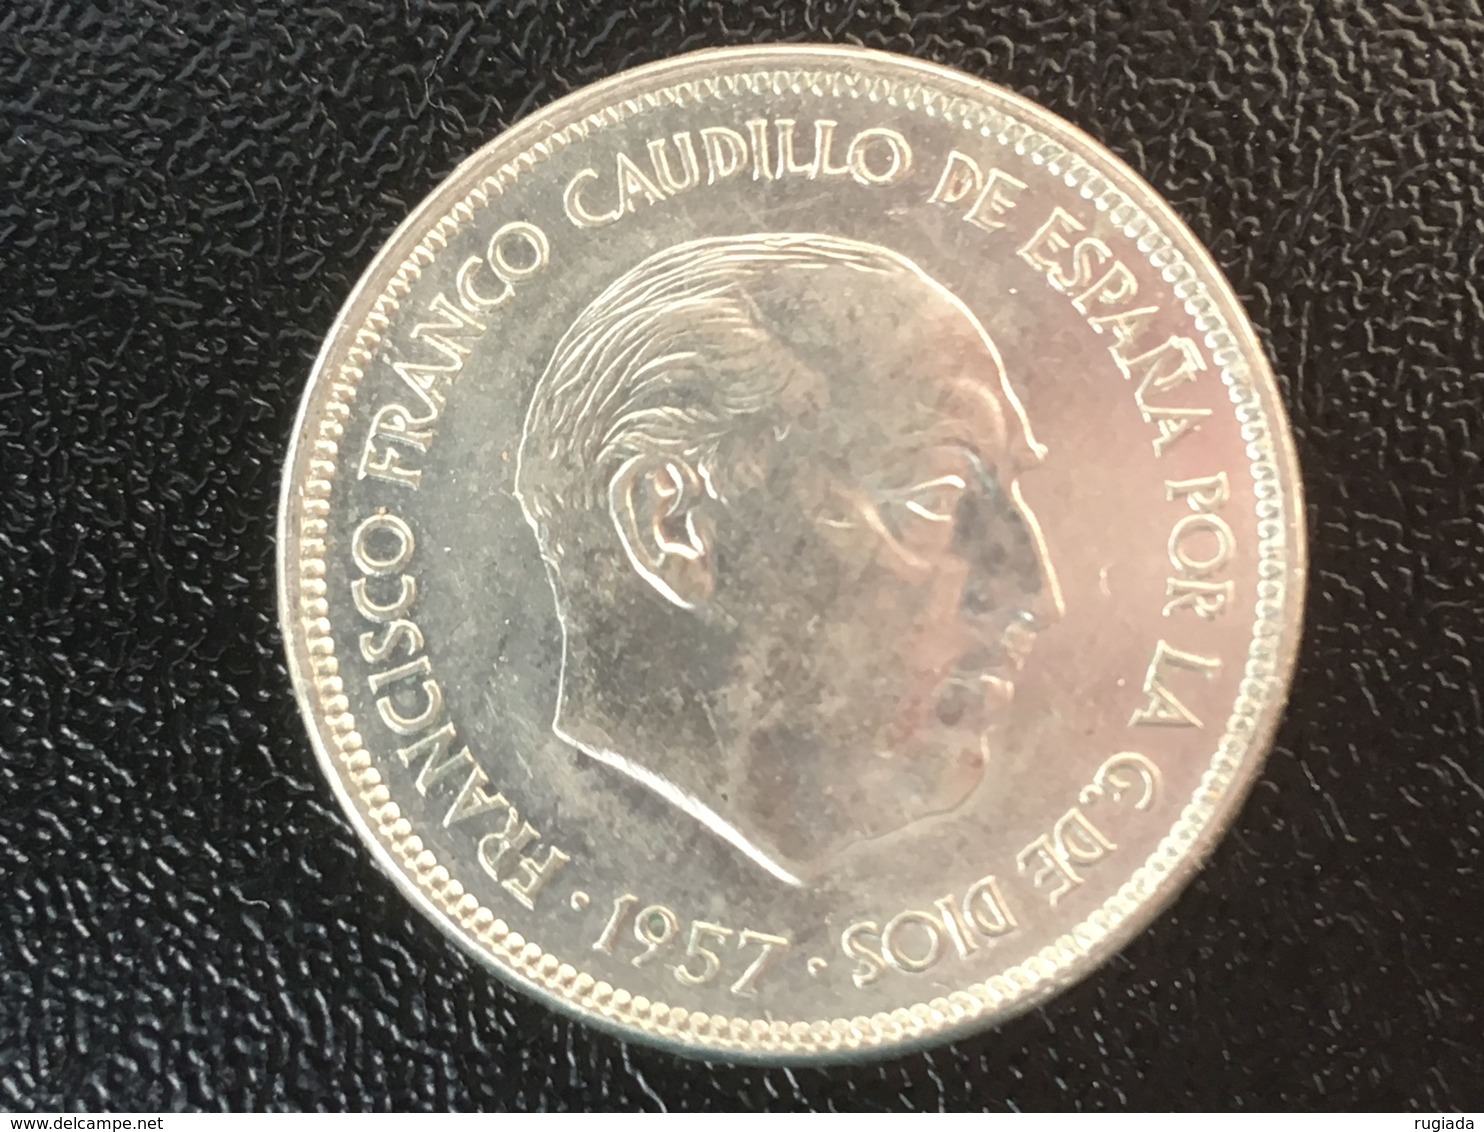 1957 (75) Spain Espana 25 Pesetas Coin - Ex Fine - 25 Pesetas